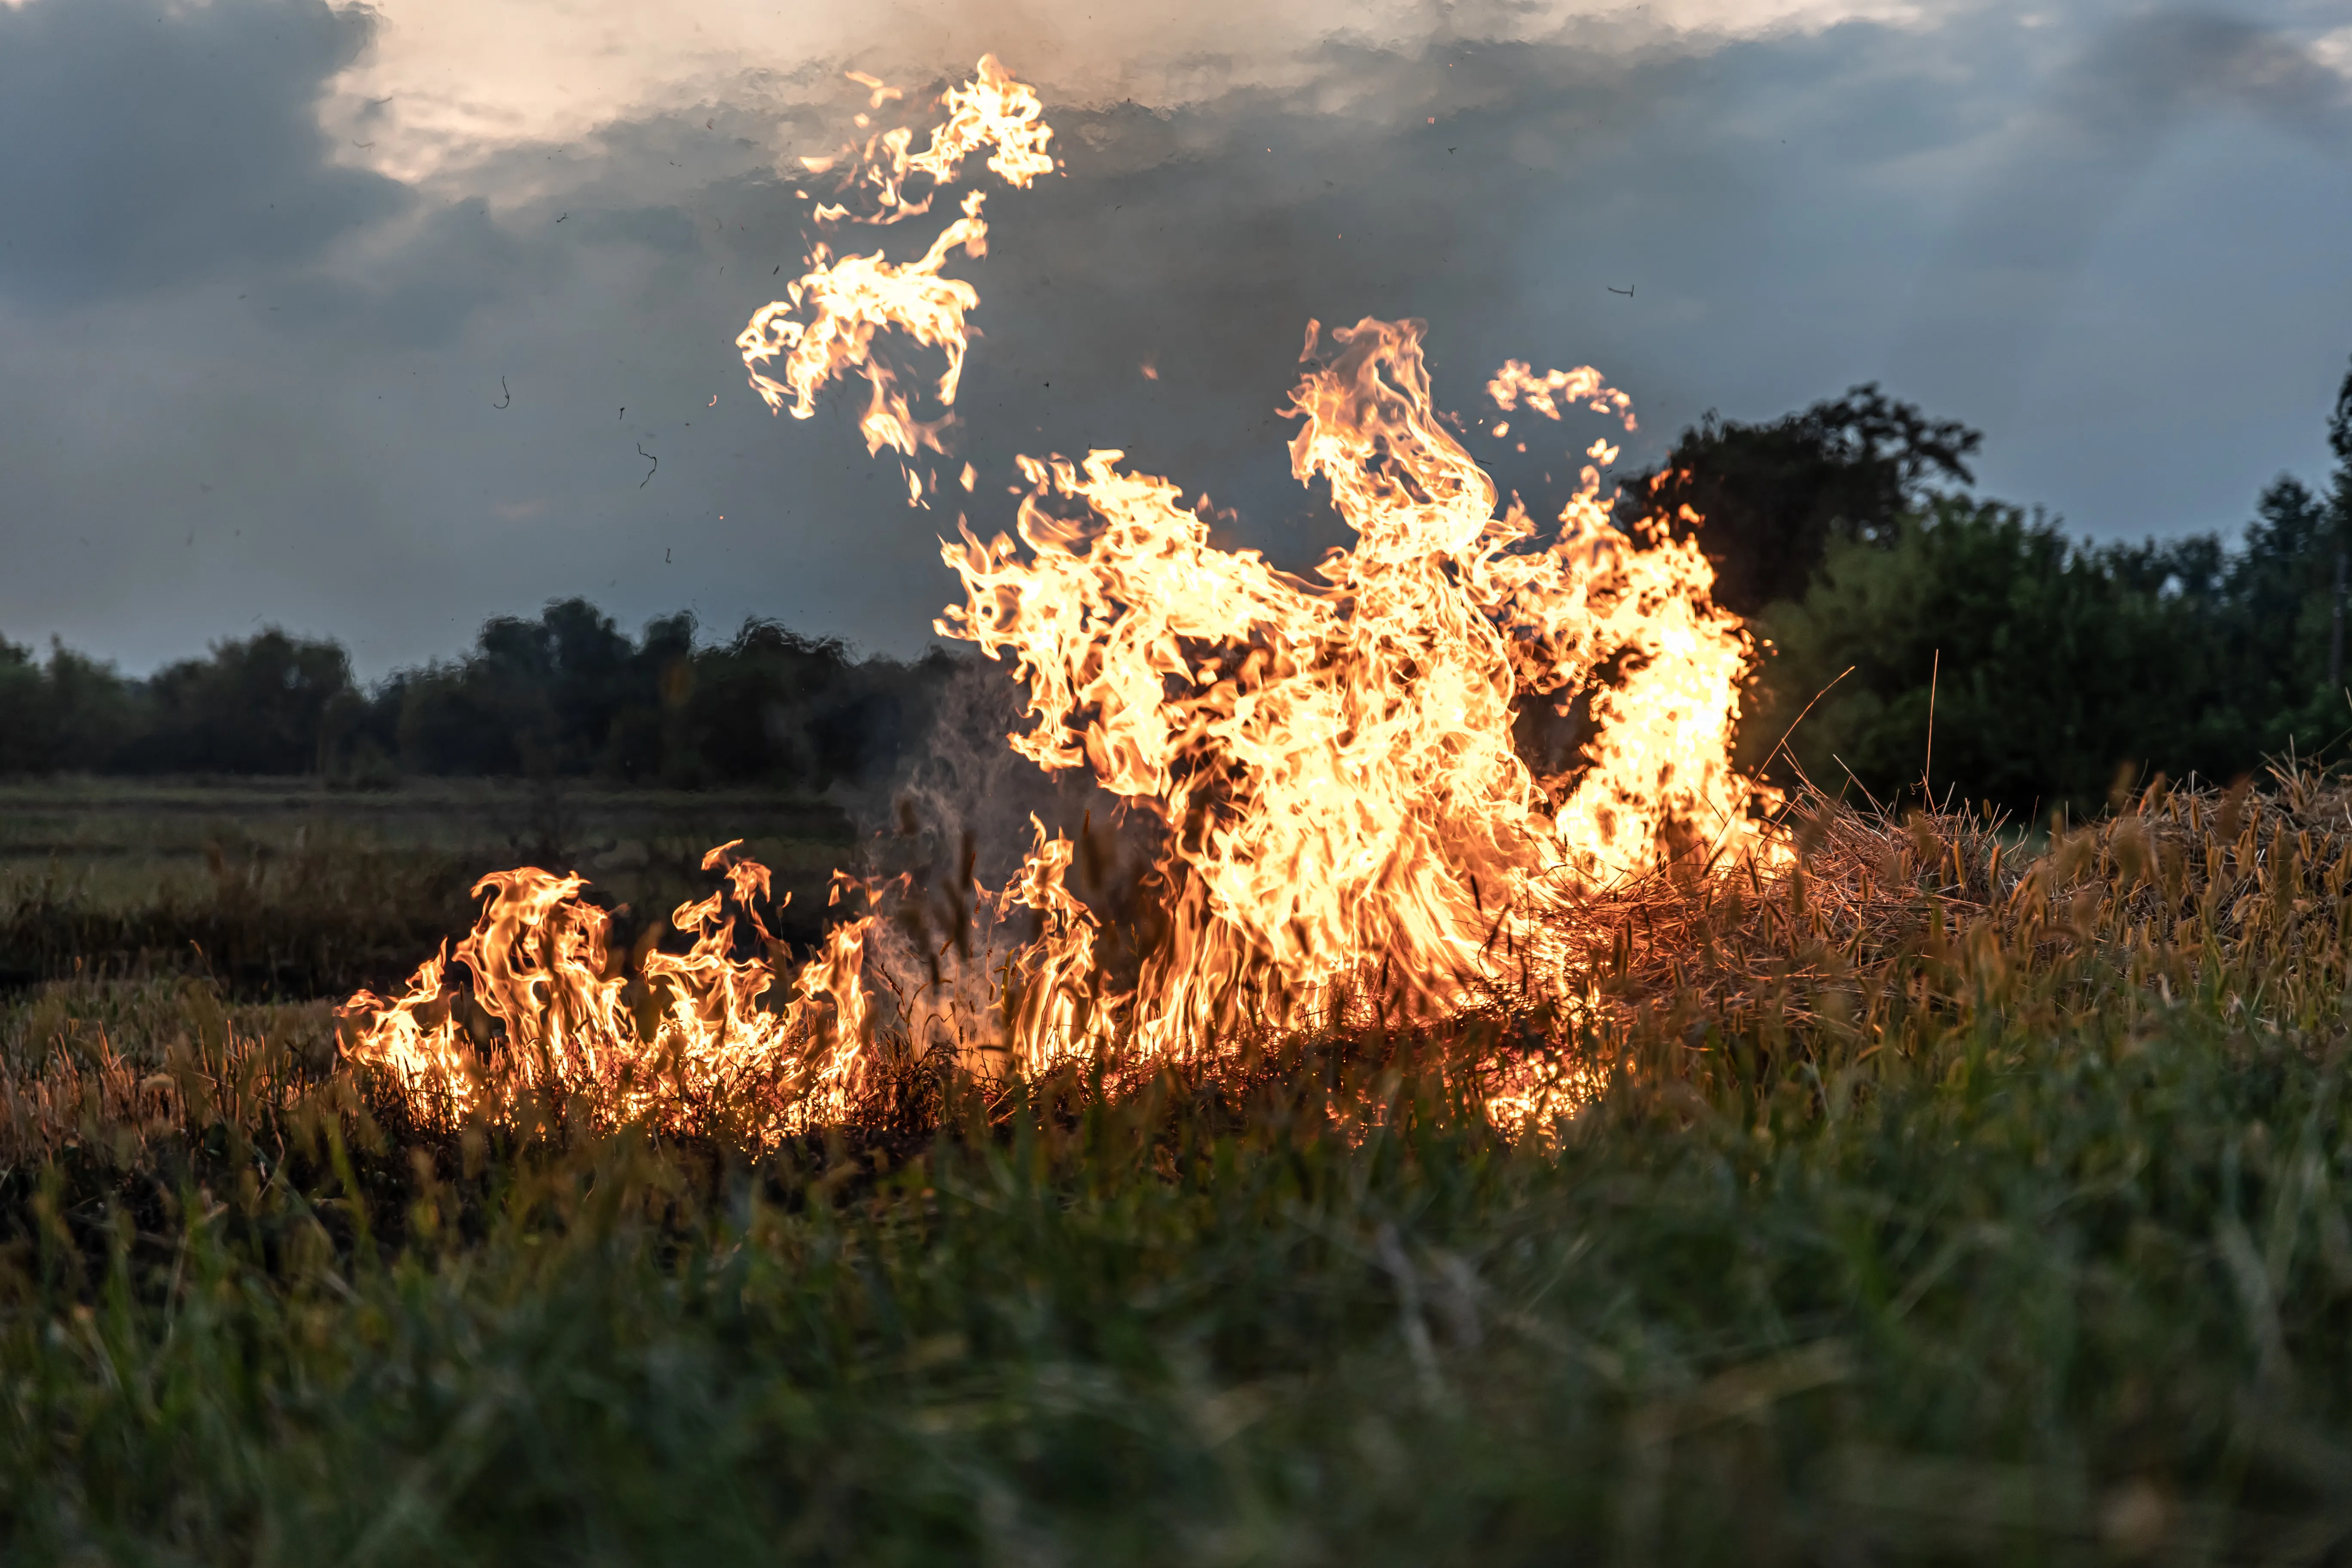 Вредно для людей и животных: Дачникам назвали токсичное вещество, выделяемое при сжигании травы

